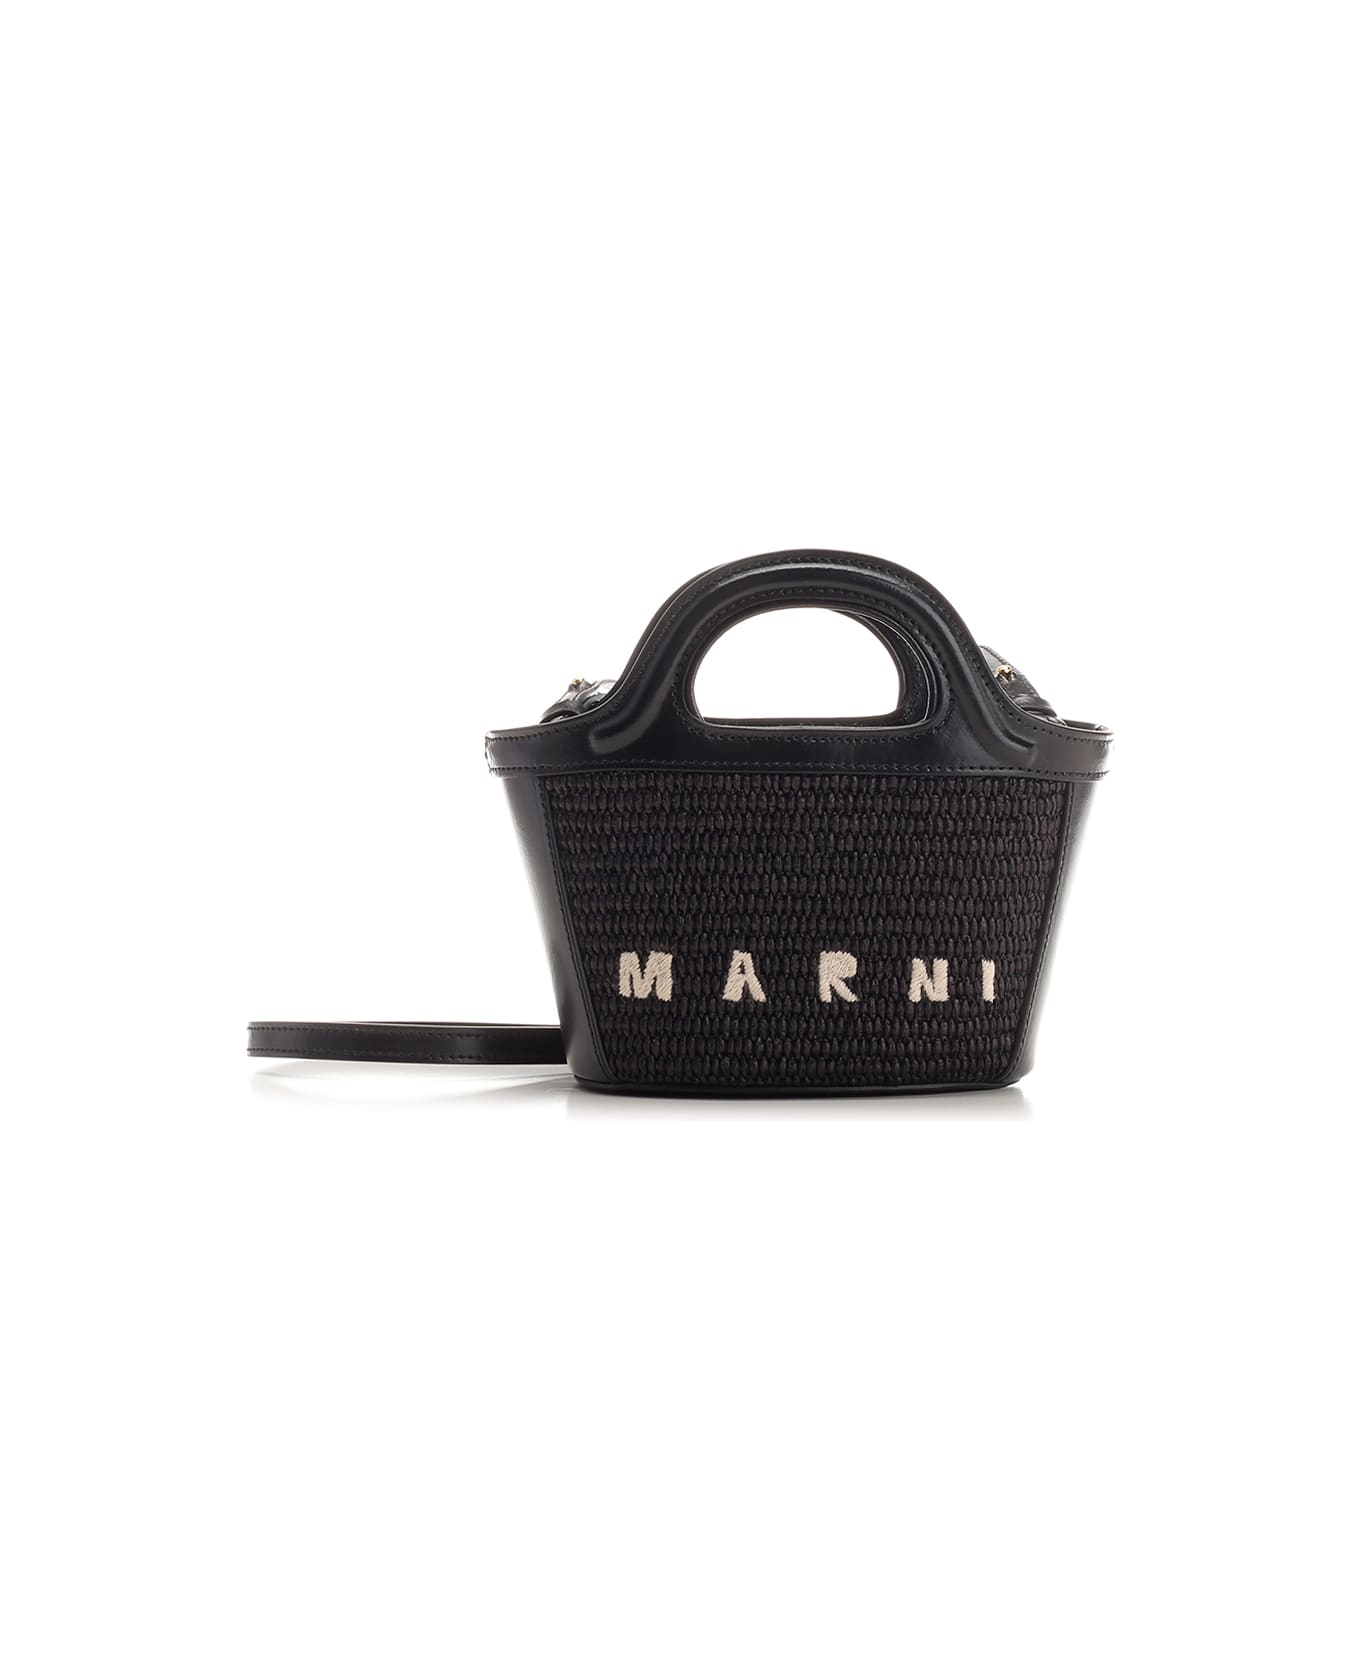 Marni 'tropicalia' Small Hand Bag